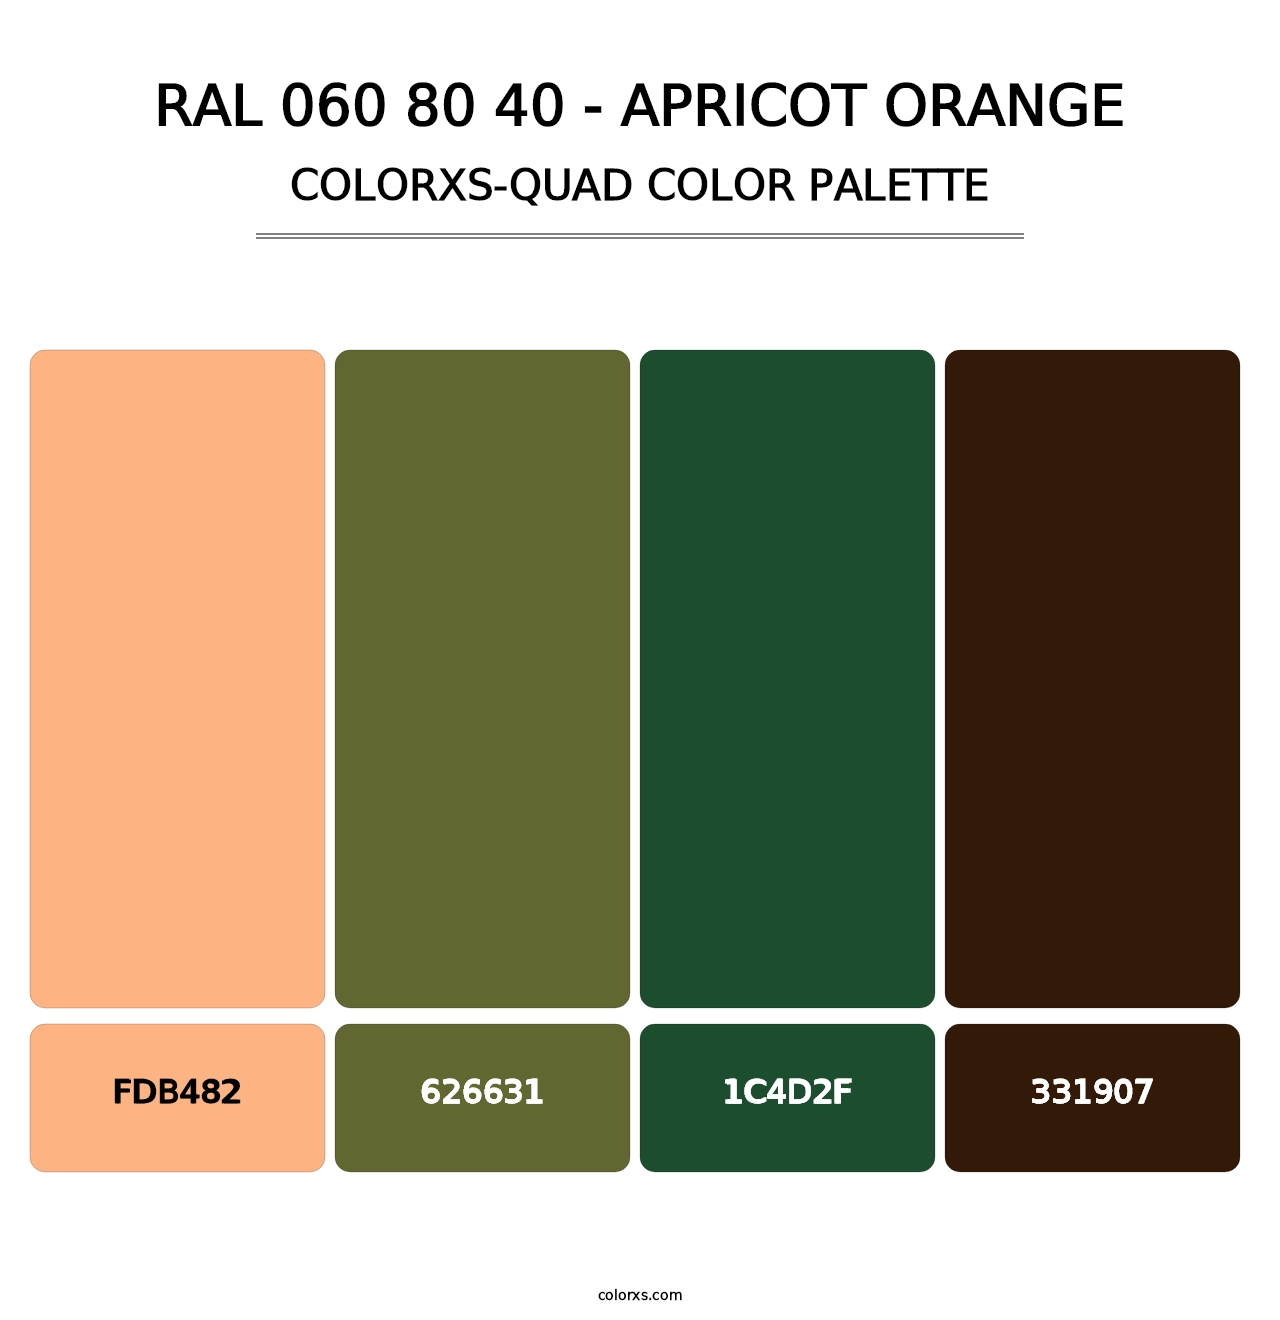 RAL 060 80 40 - Apricot Orange - Colorxs Quad Palette